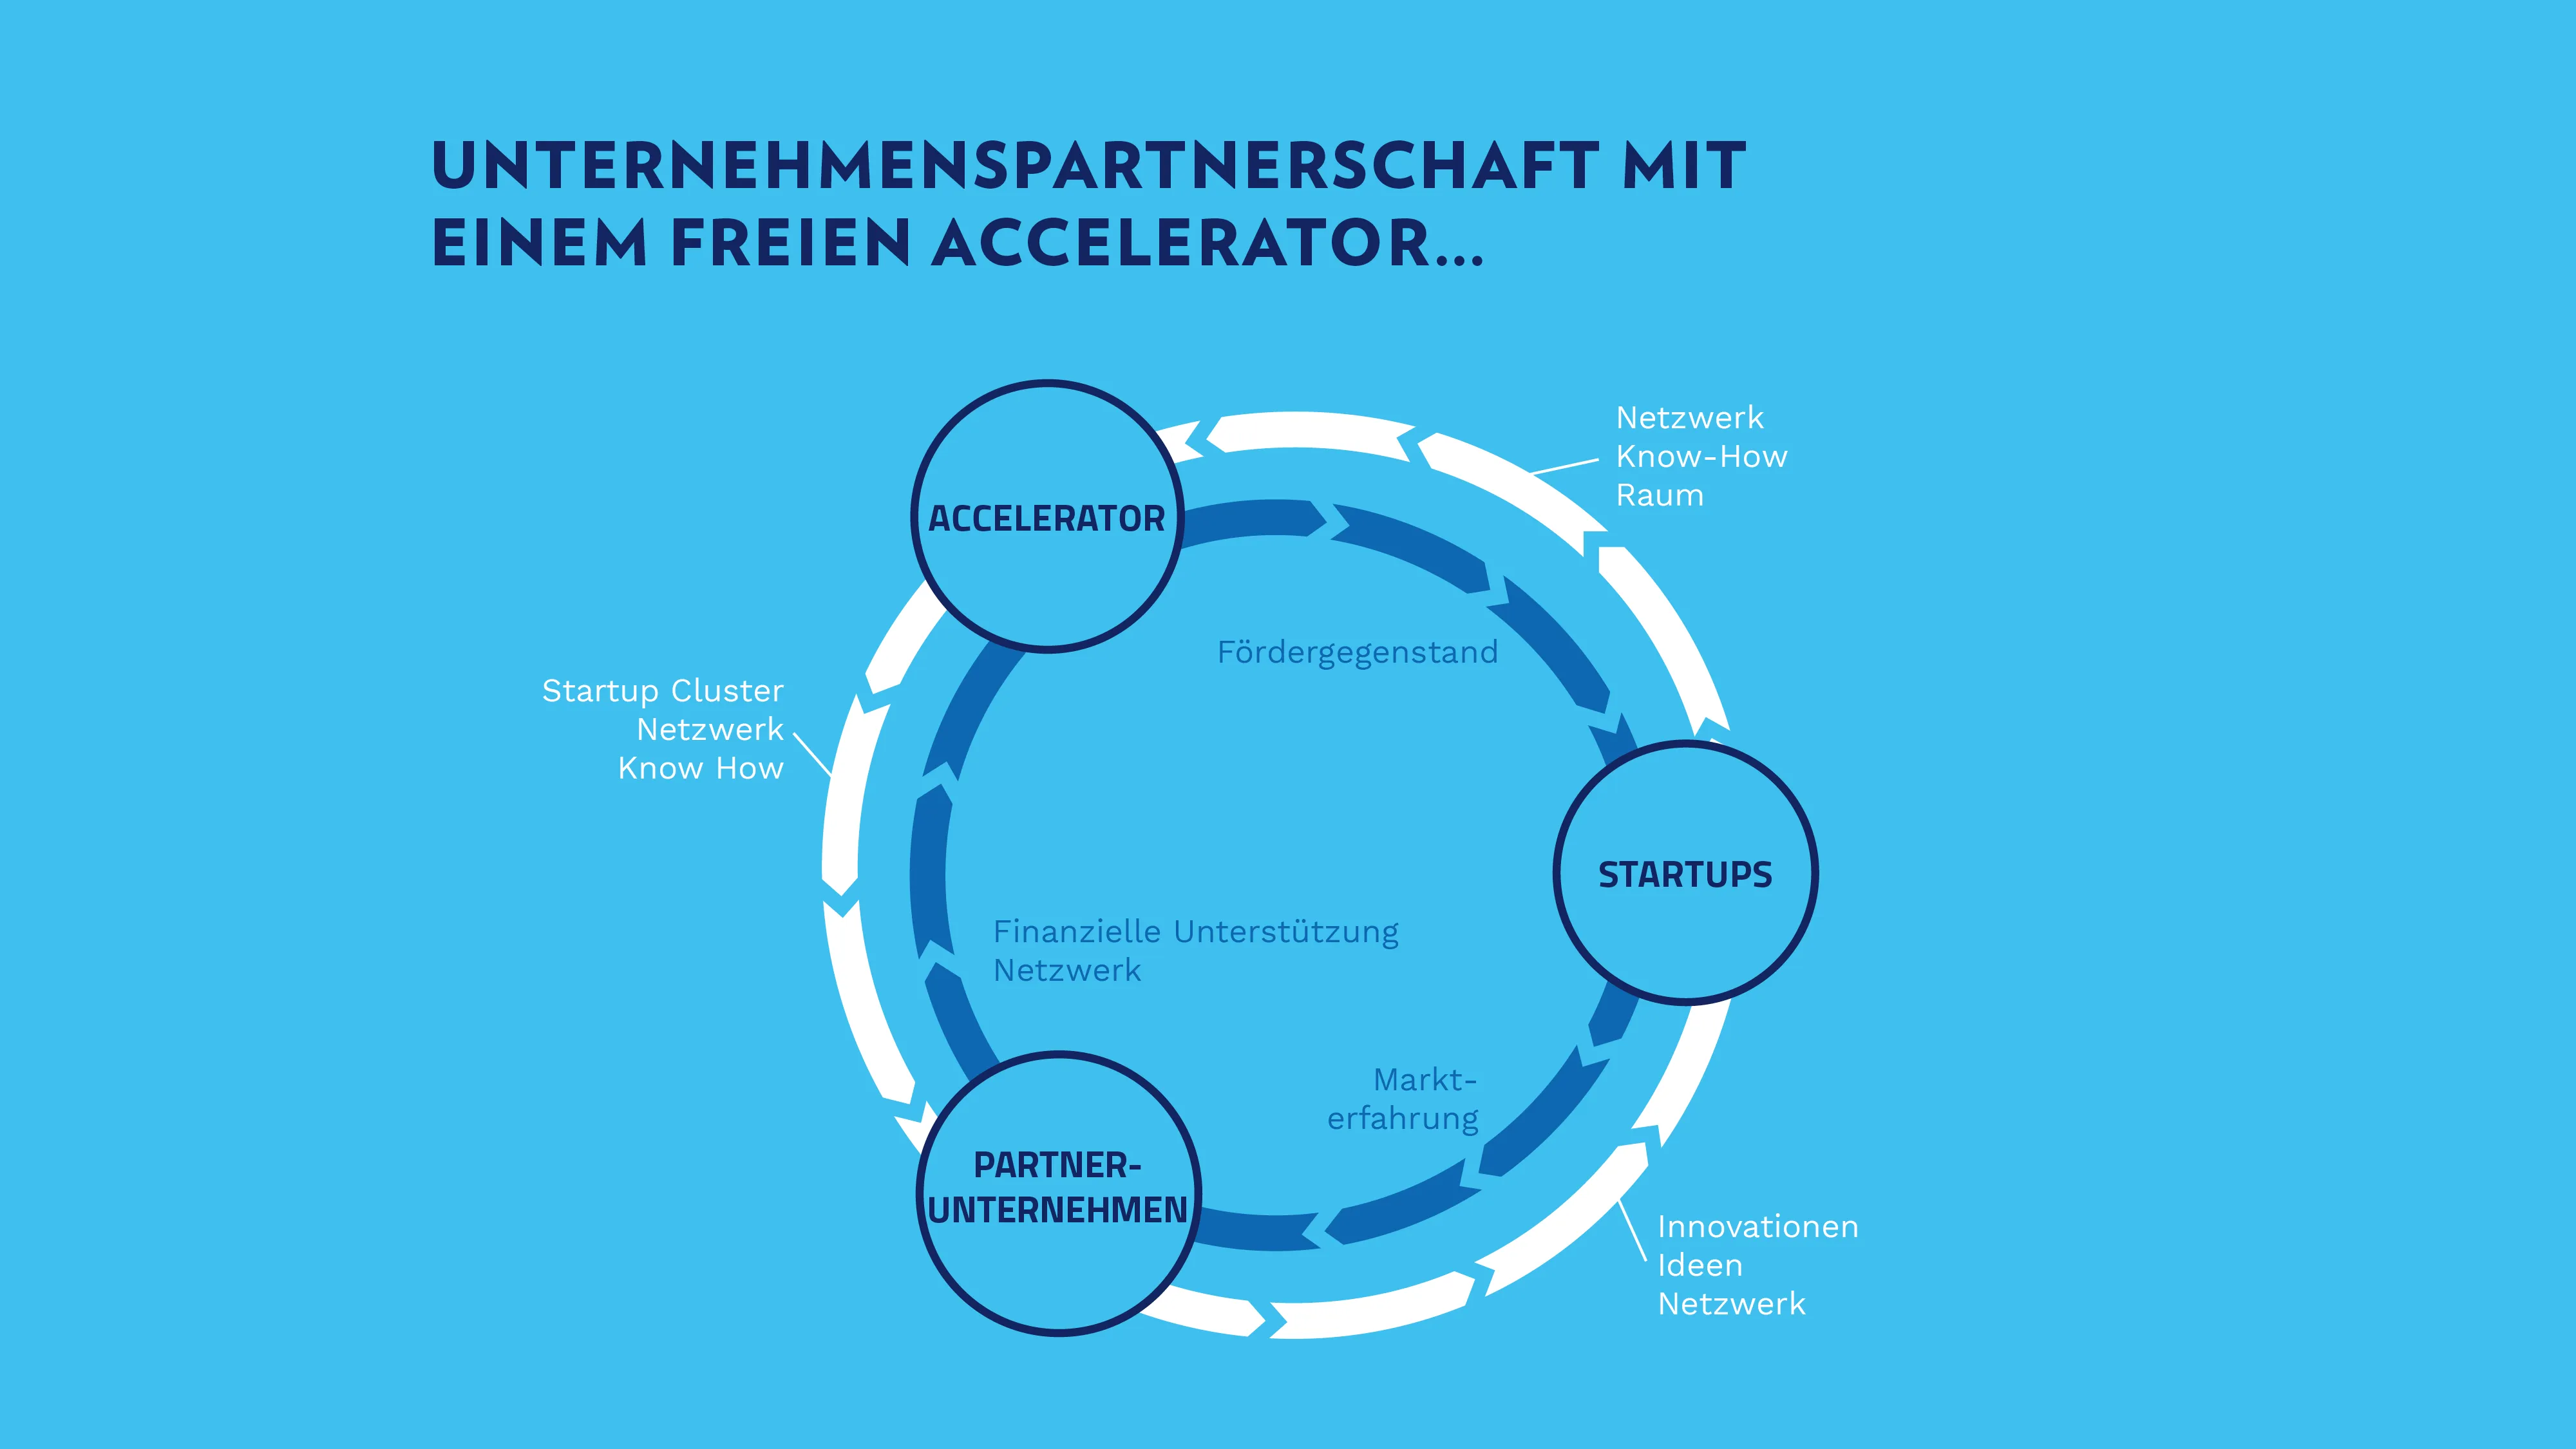 Représentation de partenariat entre les entreprises-partenaires, les Startups et l'accélérateur